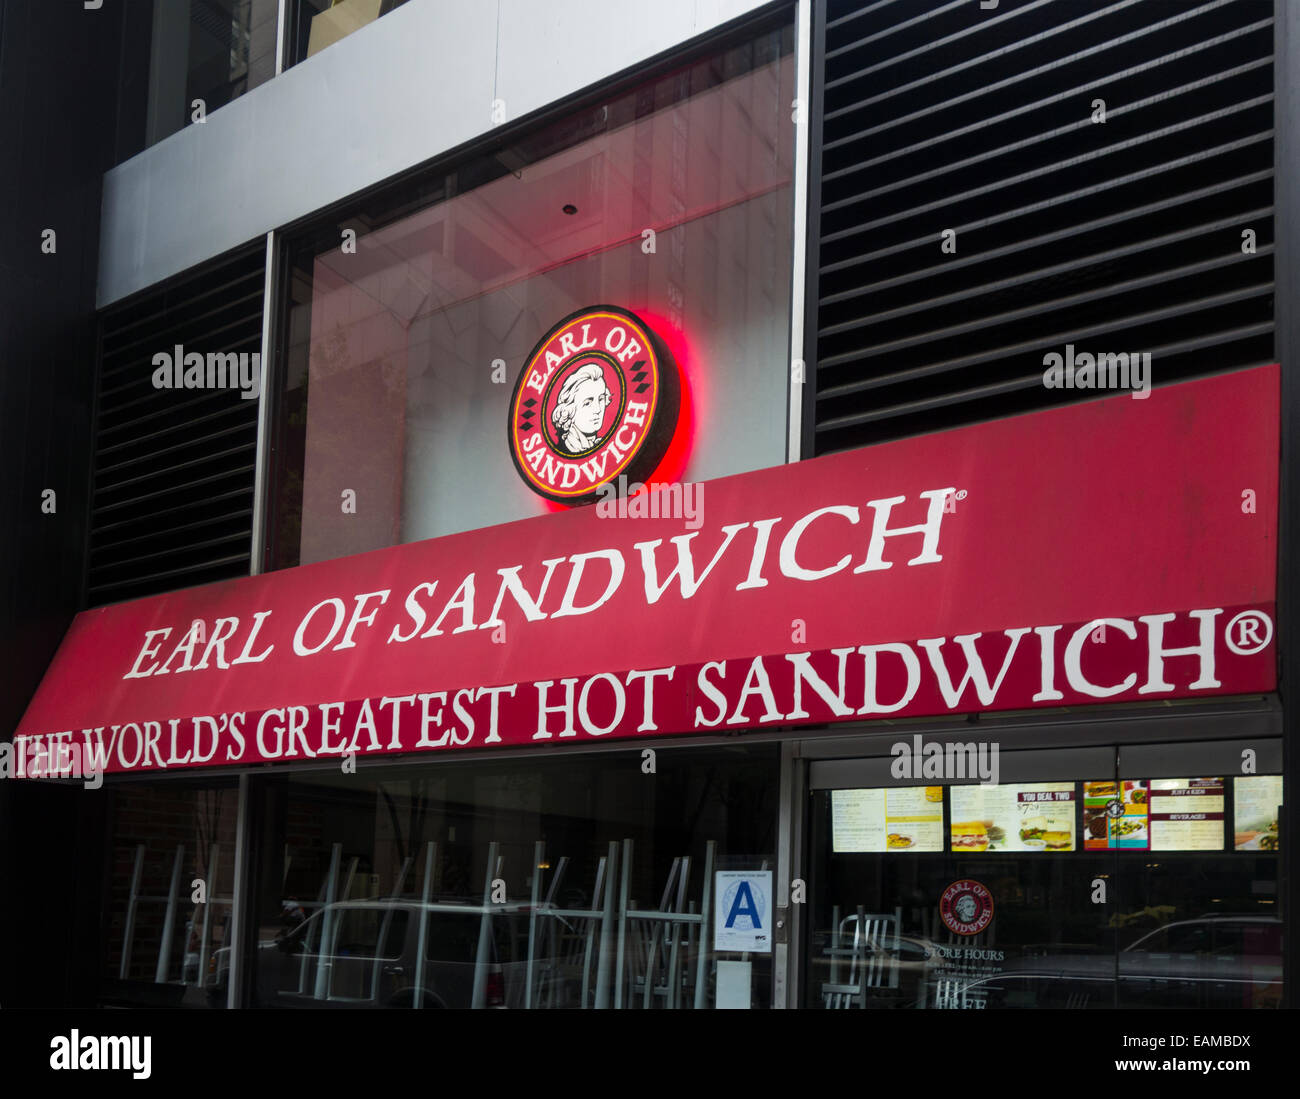 Conte di sandwich Ristorante nella città di New York Foto Stock